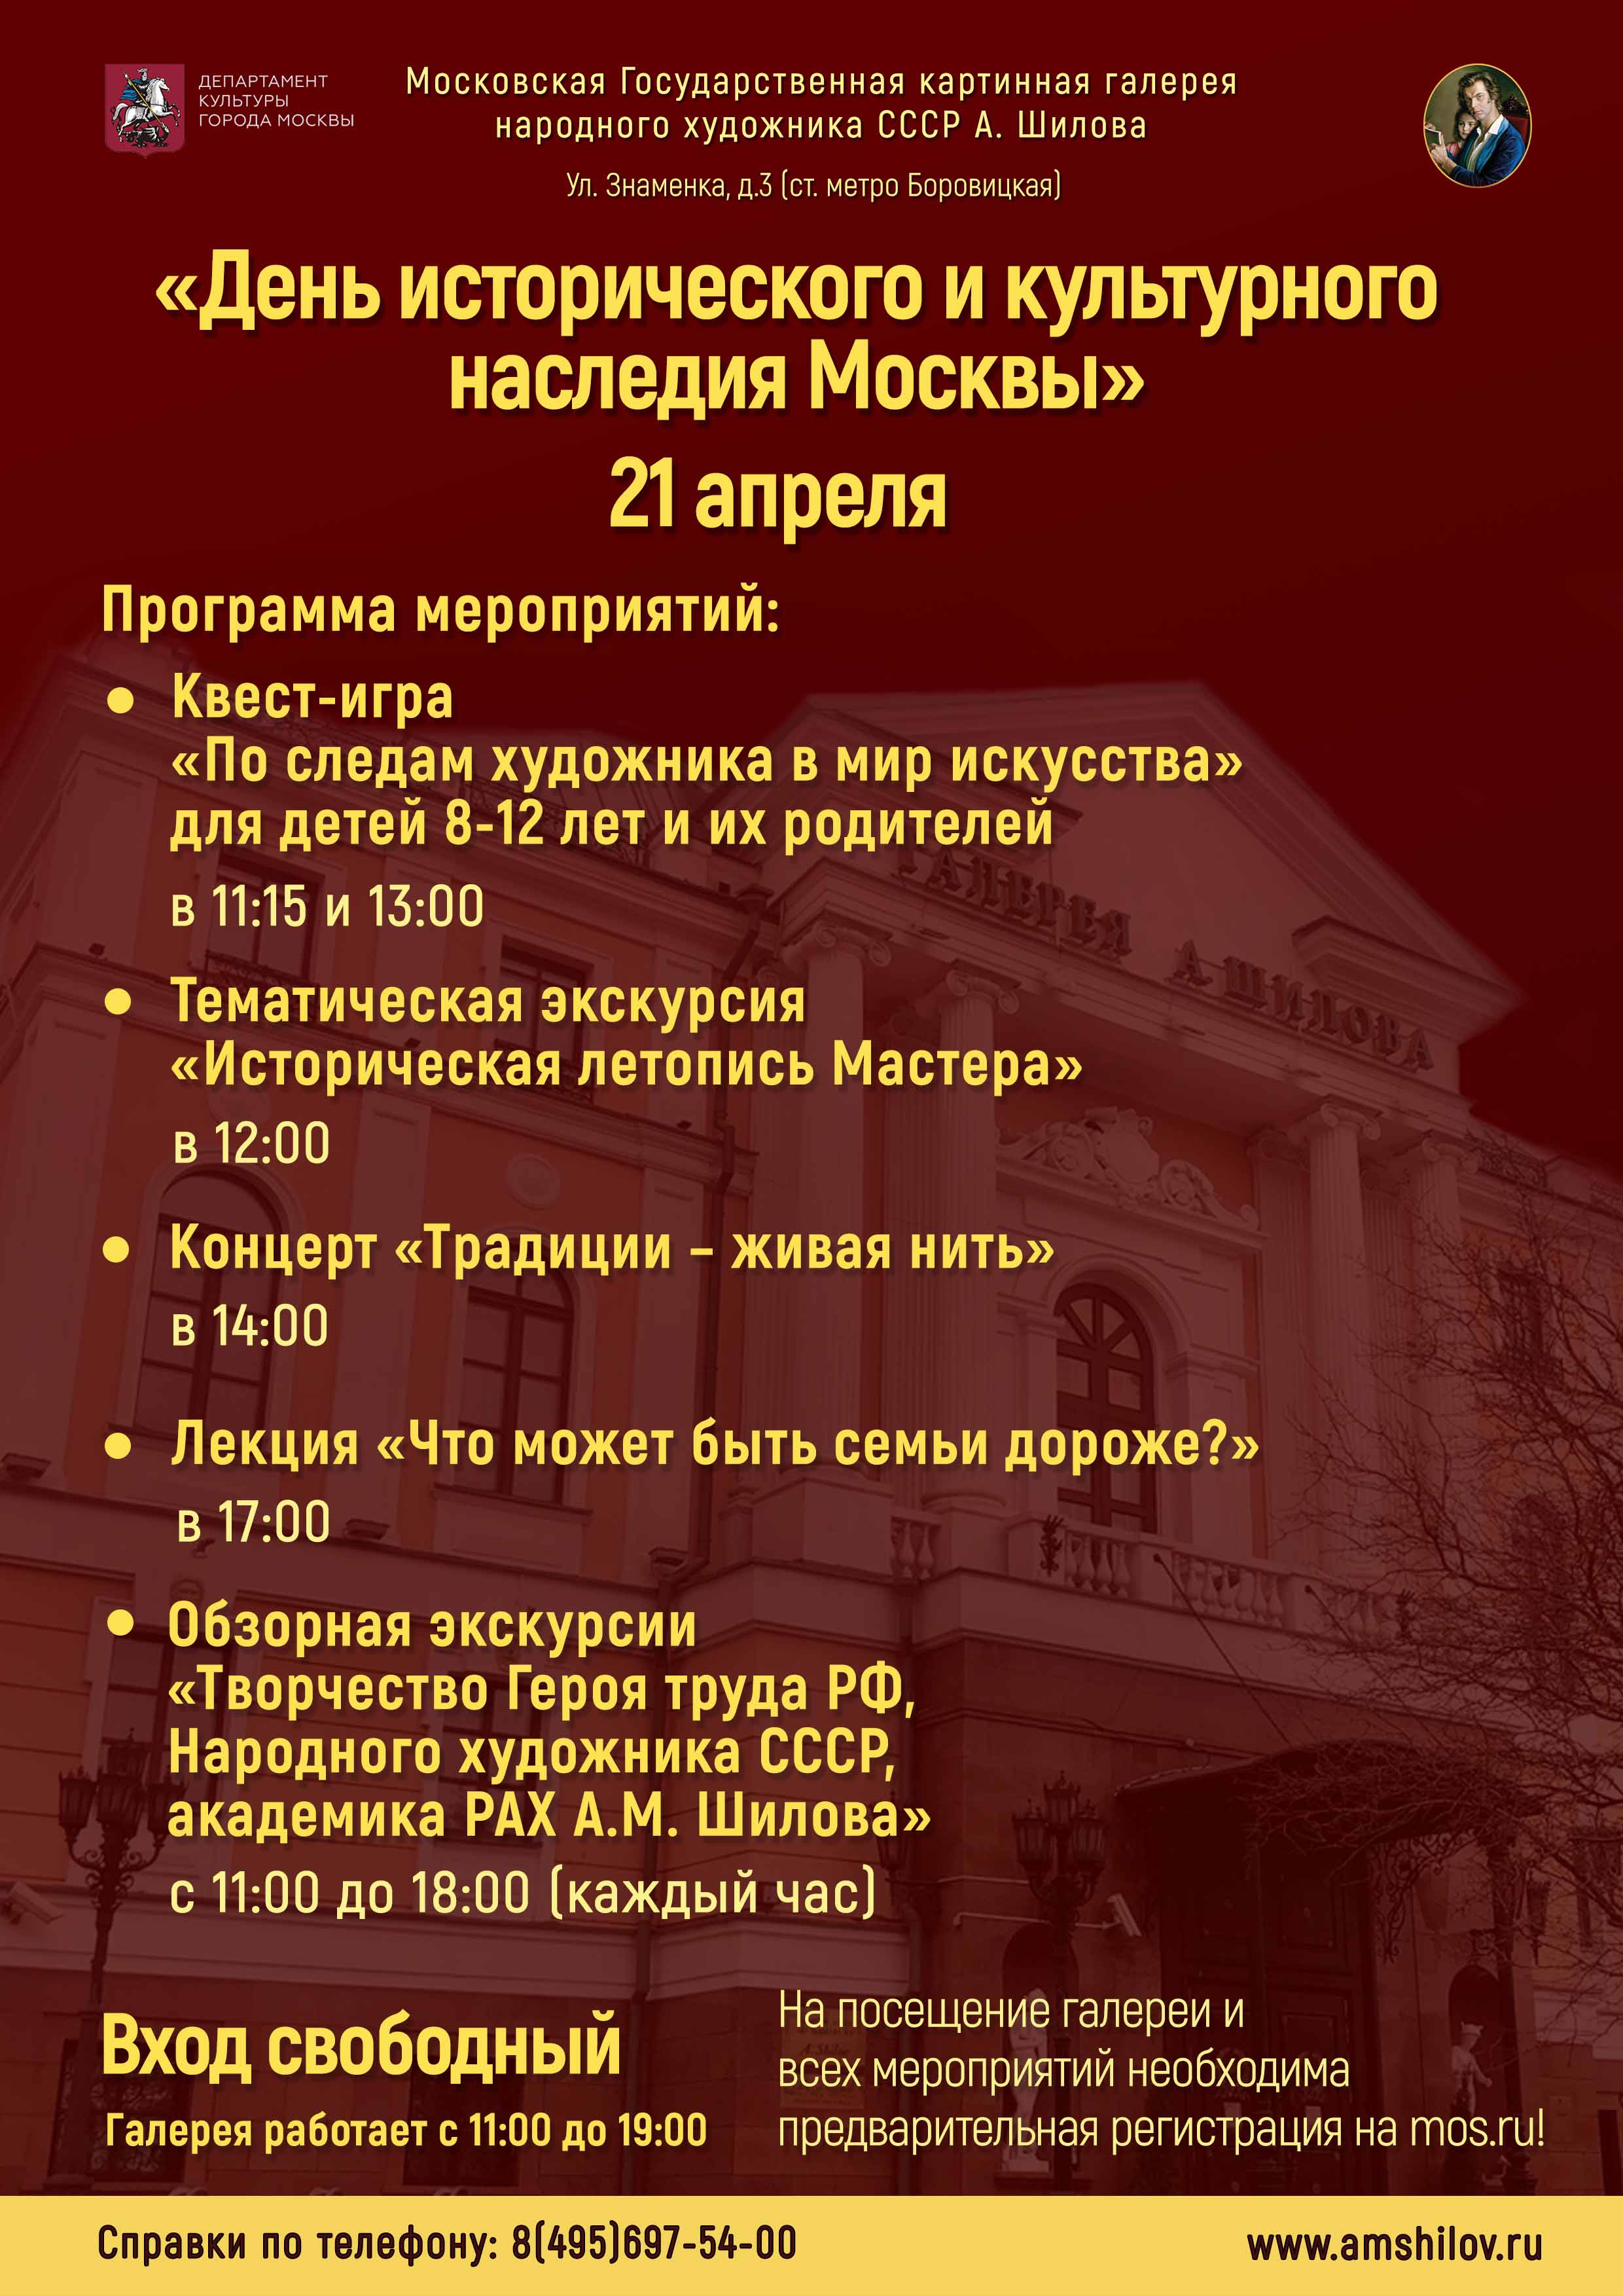 Мероприятия в Галерее А. Шилова в рамках акции «День исторического и культурного наследия города Москвы» 21 апреля